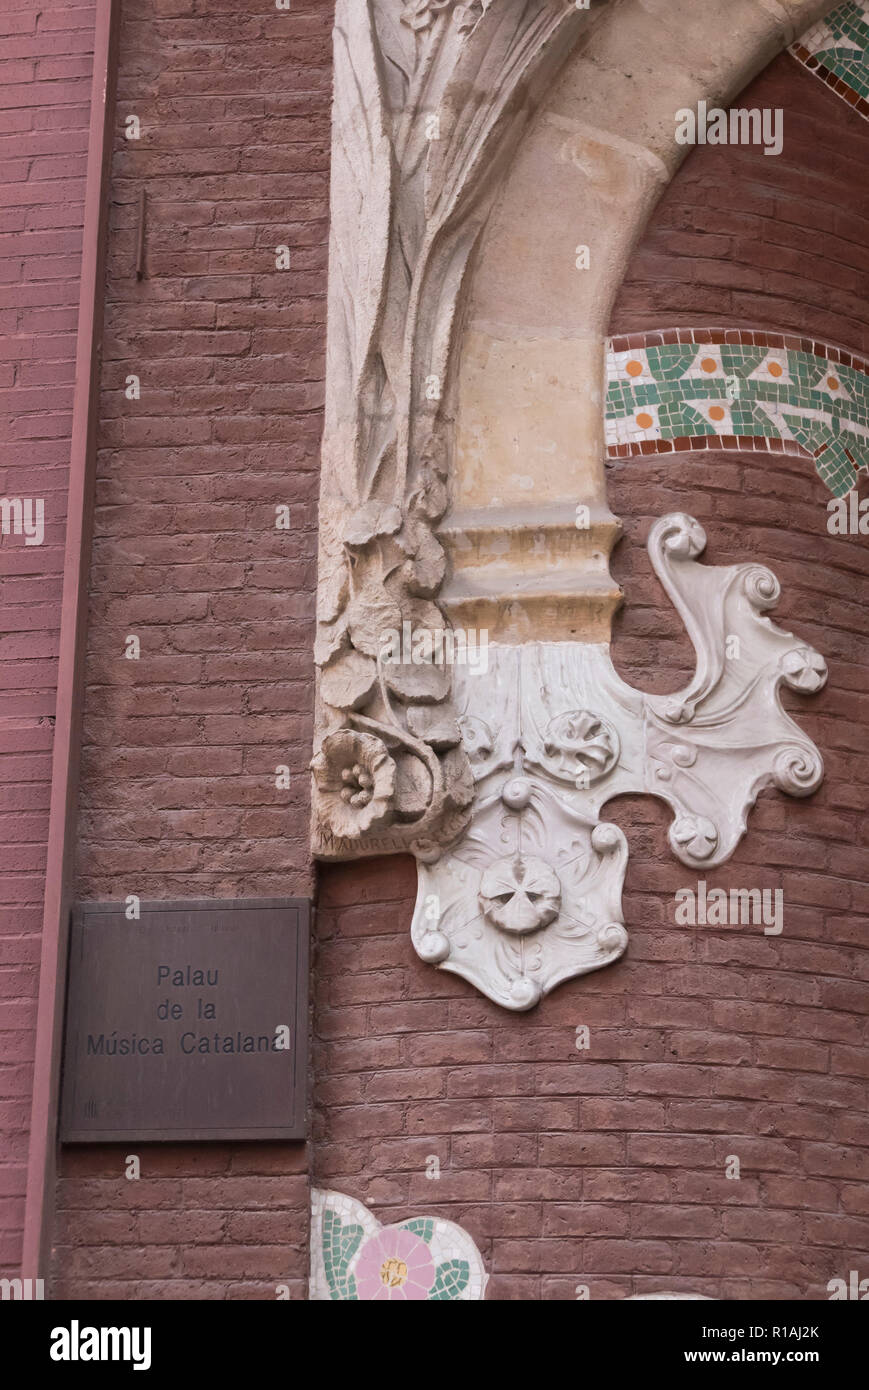 Décorations en pierre classique sur le mur extérieur de la Palau de la Musica, Barcelone, Espagne Banque D'Images